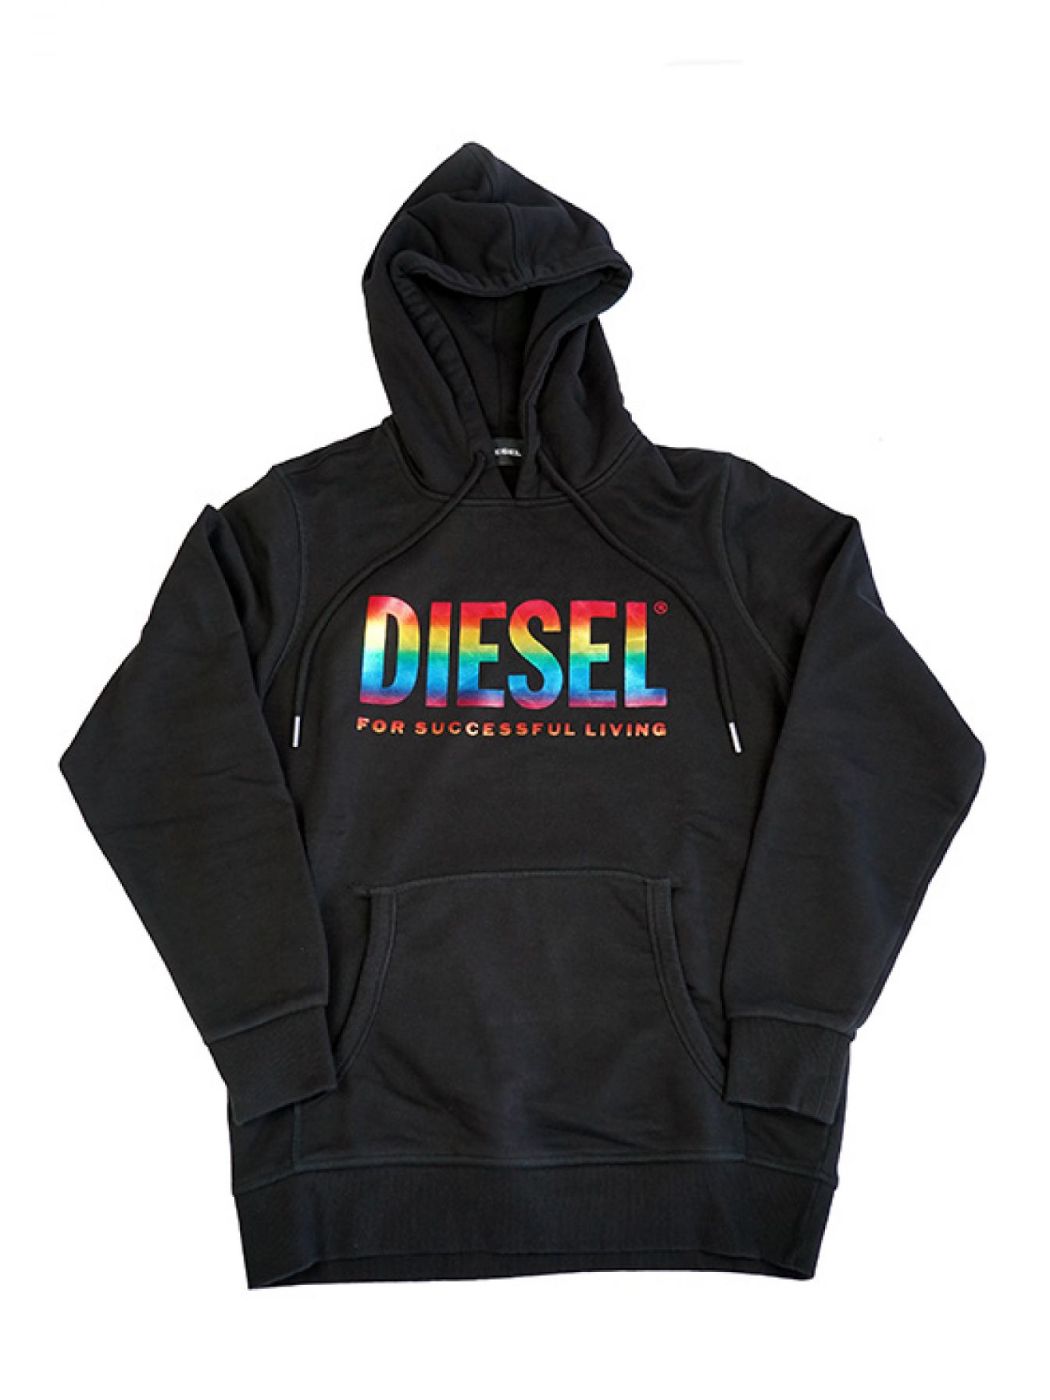 Diesel Pride Hoodie Black 2020